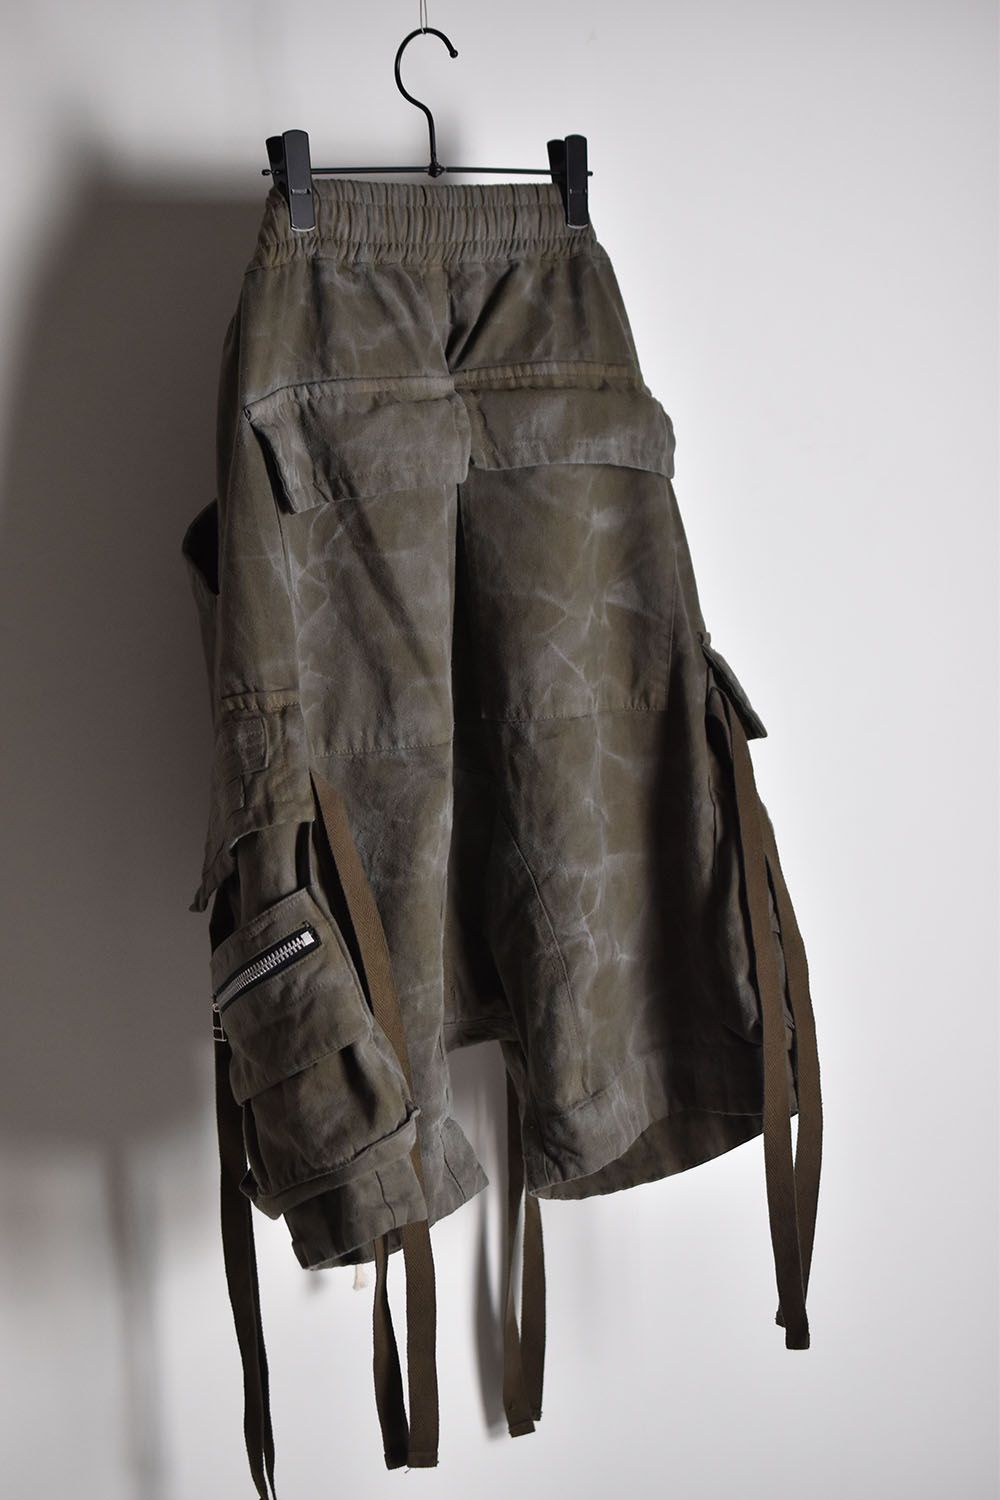 Vintage Dyed Zip Shorts"Khaki"/ ヴィンテージダイジップショーツ"カーキ"